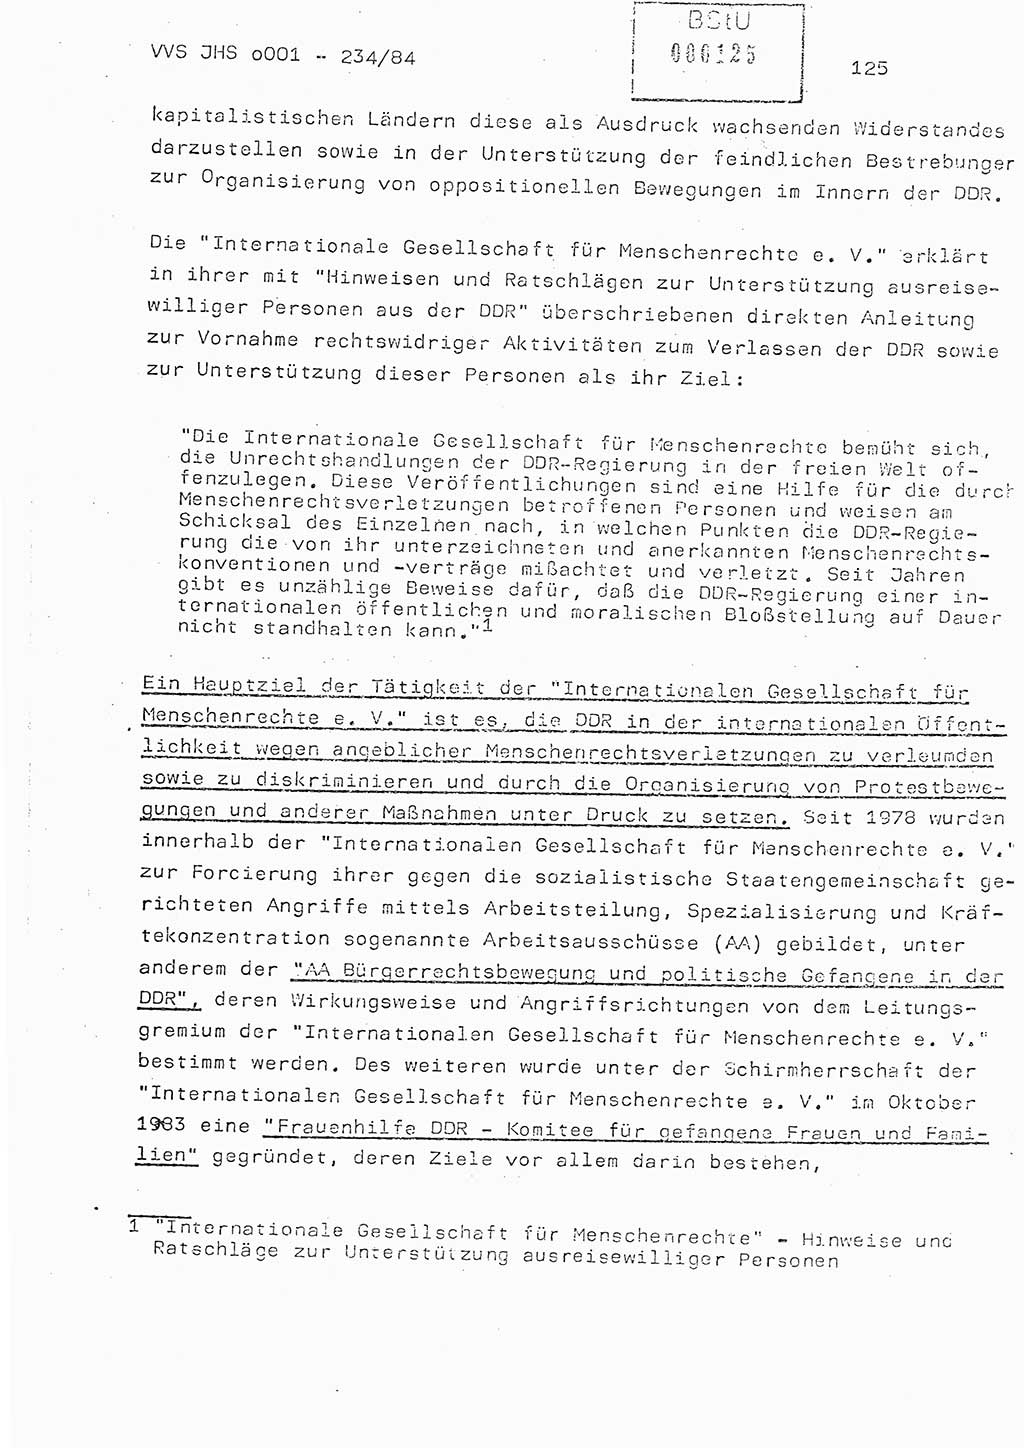 Dissertation Oberst Siegfried Rataizick (Abt. ⅩⅣ), Oberstleutnant Volkmar Heinz (Abt. ⅩⅣ), Oberstleutnant Werner Stein (HA Ⅸ), Hauptmann Heinz Conrad (JHS), Ministerium für Staatssicherheit (MfS) [Deutsche Demokratische Republik (DDR)], Juristische Hochschule (JHS), Vertrauliche Verschlußsache (VVS) o001-234/84, Potsdam 1984, Seite 125 (Diss. MfS DDR JHS VVS o001-234/84 1984, S. 125)